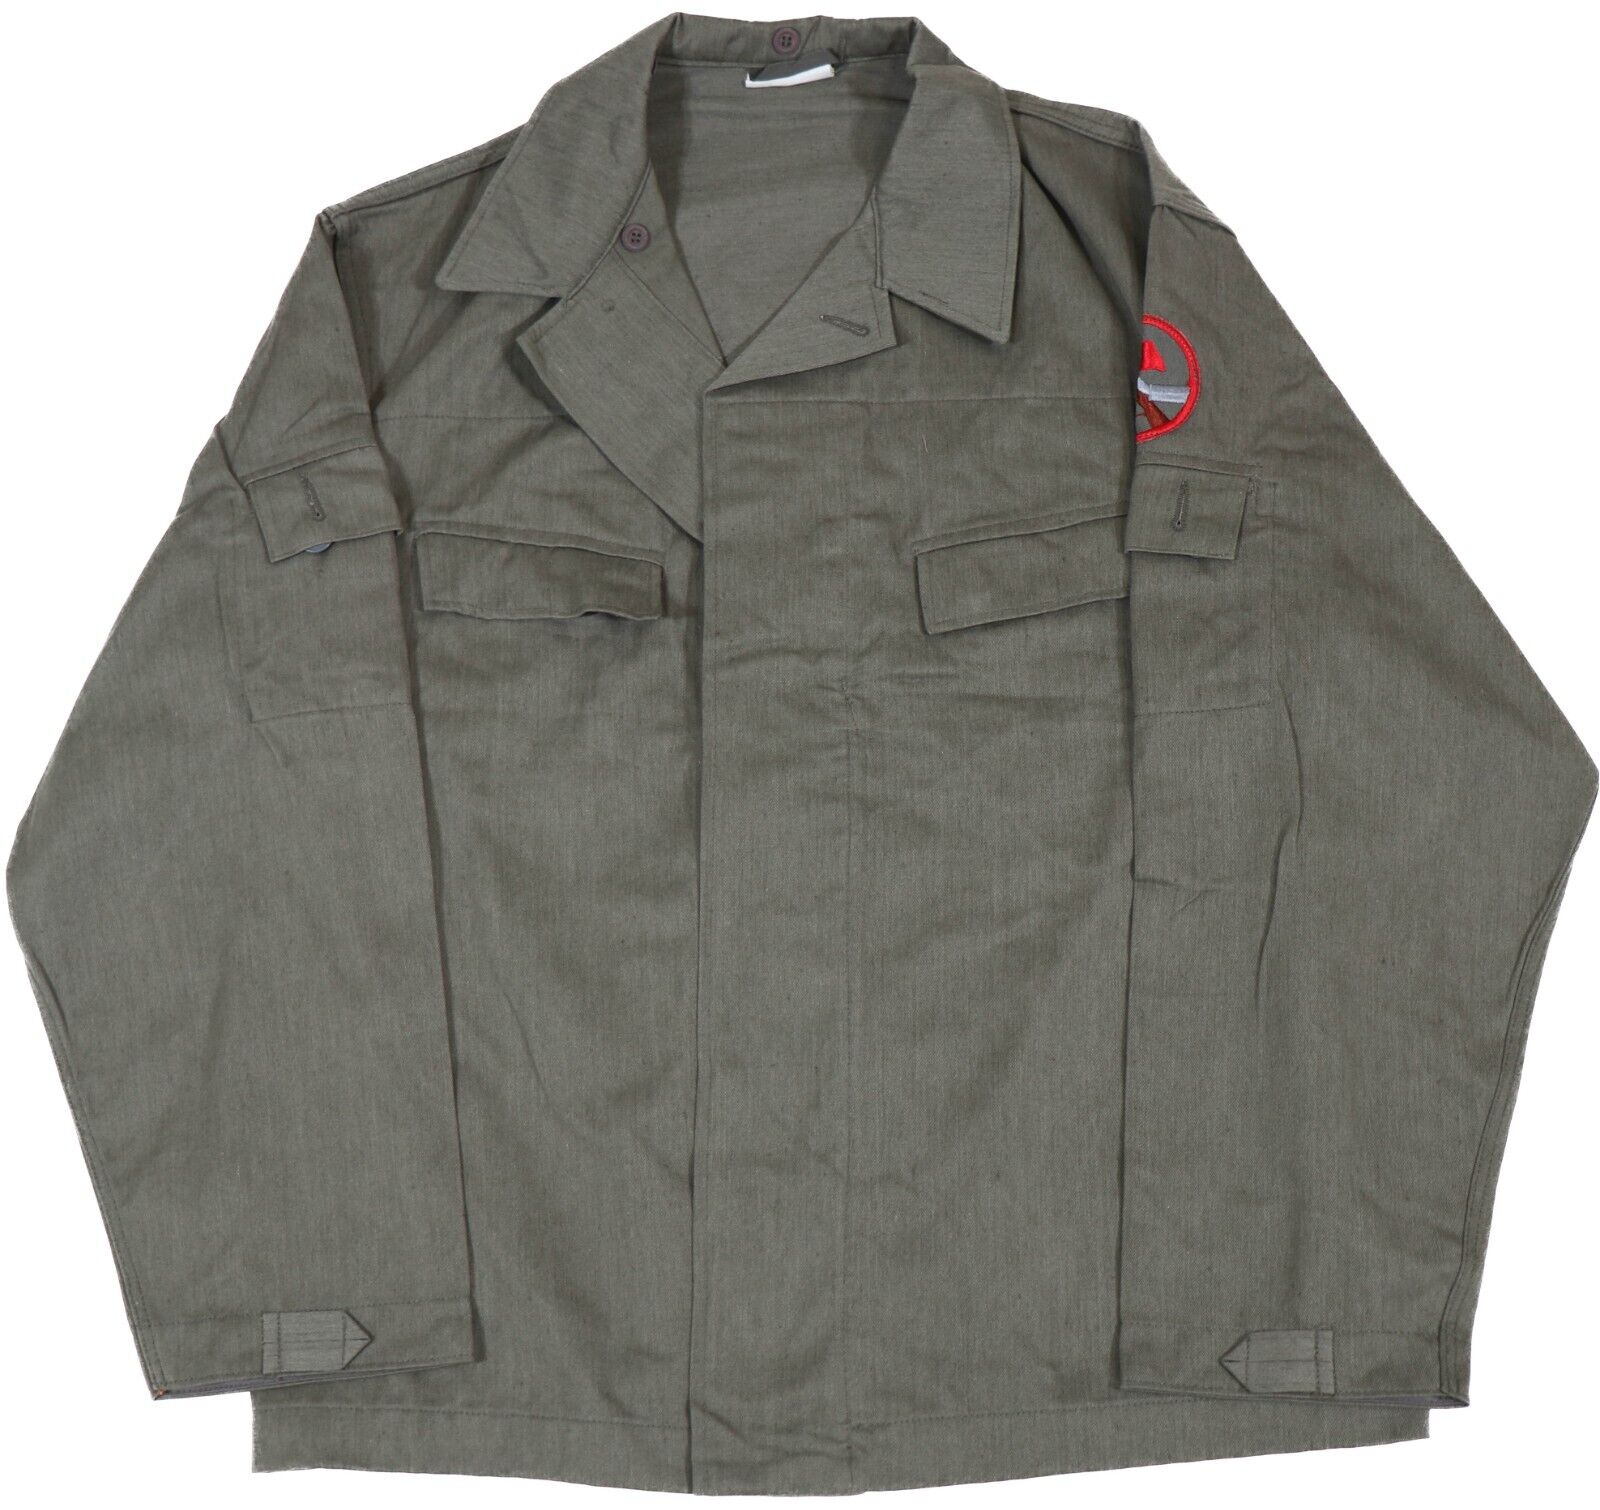 Large - East German Kampfgruppen OD Summer Issue Jacket Uniform DDR NVA Shirt